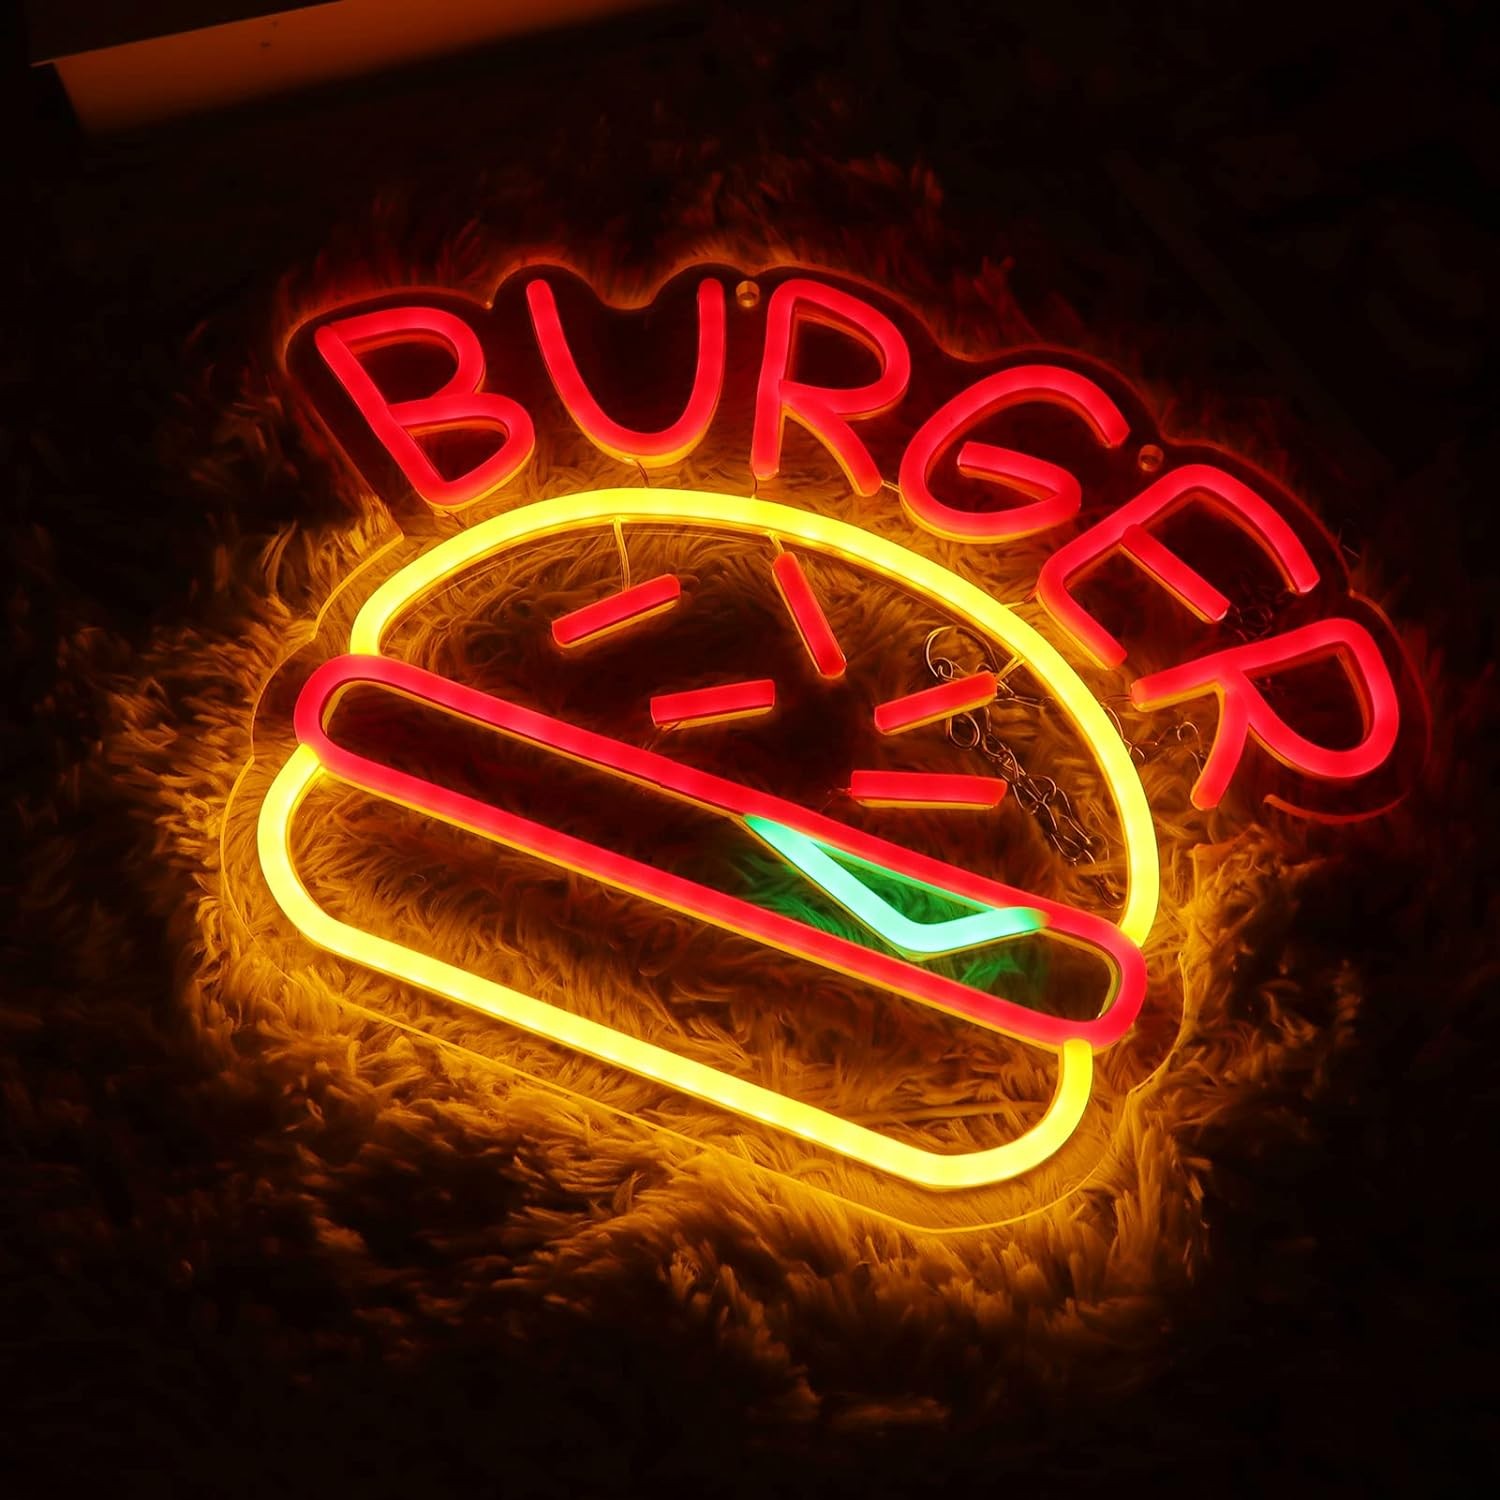 Insegna al neon a LED luminosa illuminata per pubblicità di hamburger